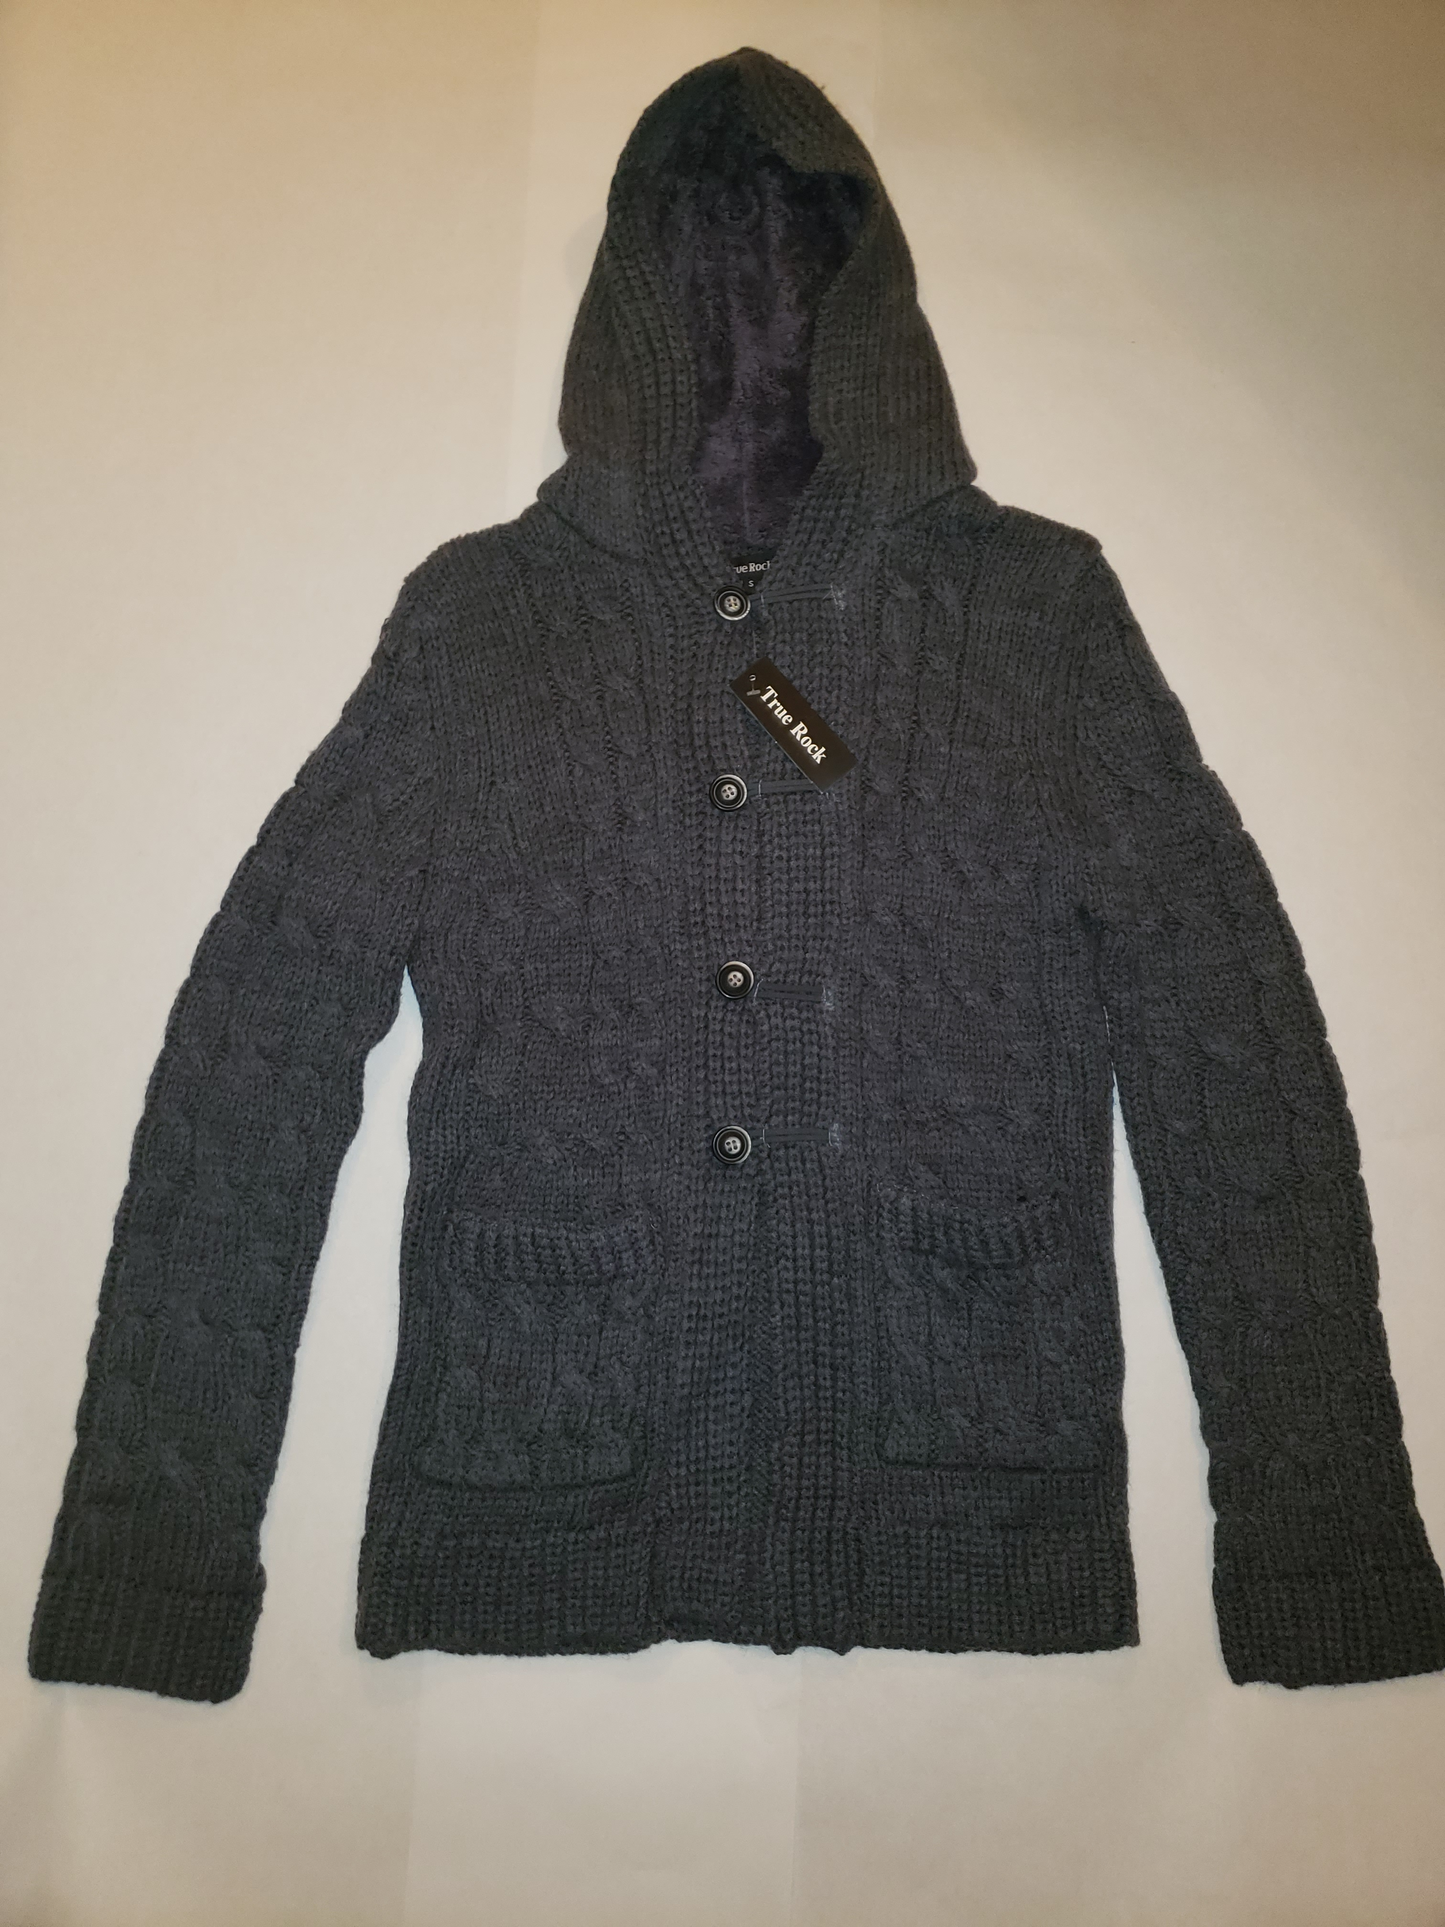 Sweater jacket Unisex